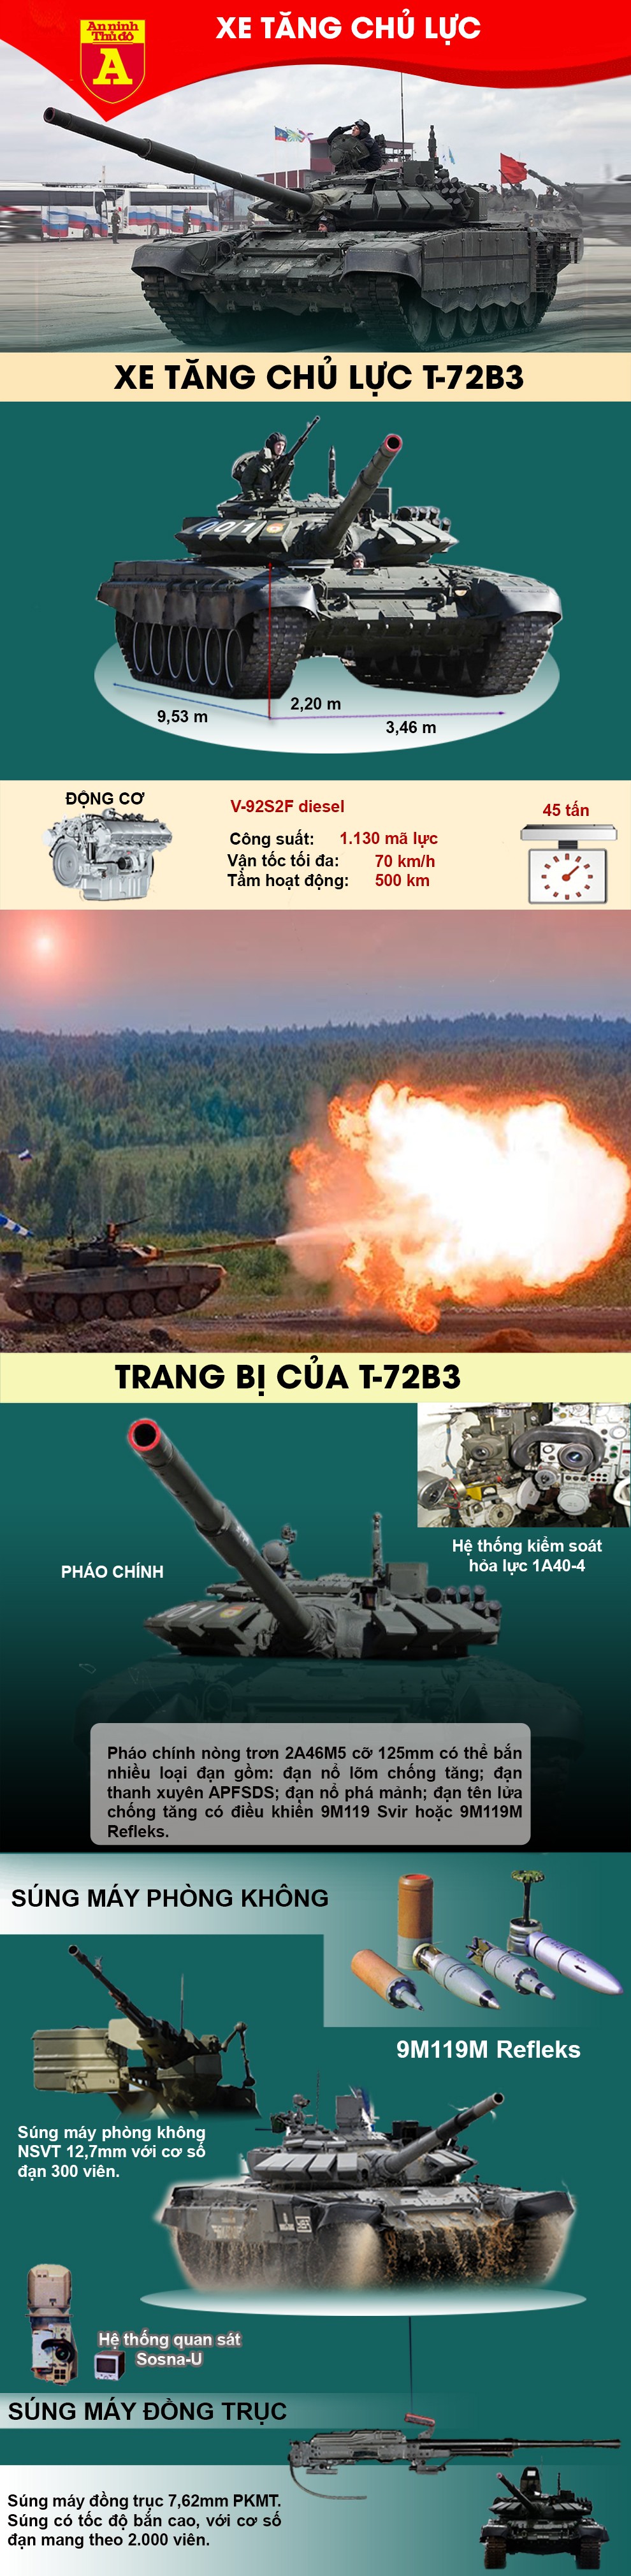 [Infographic] Xe tăng T-72B3 thất bại trên thương trường vì Nga quá ảo tưởng? ảnh 2